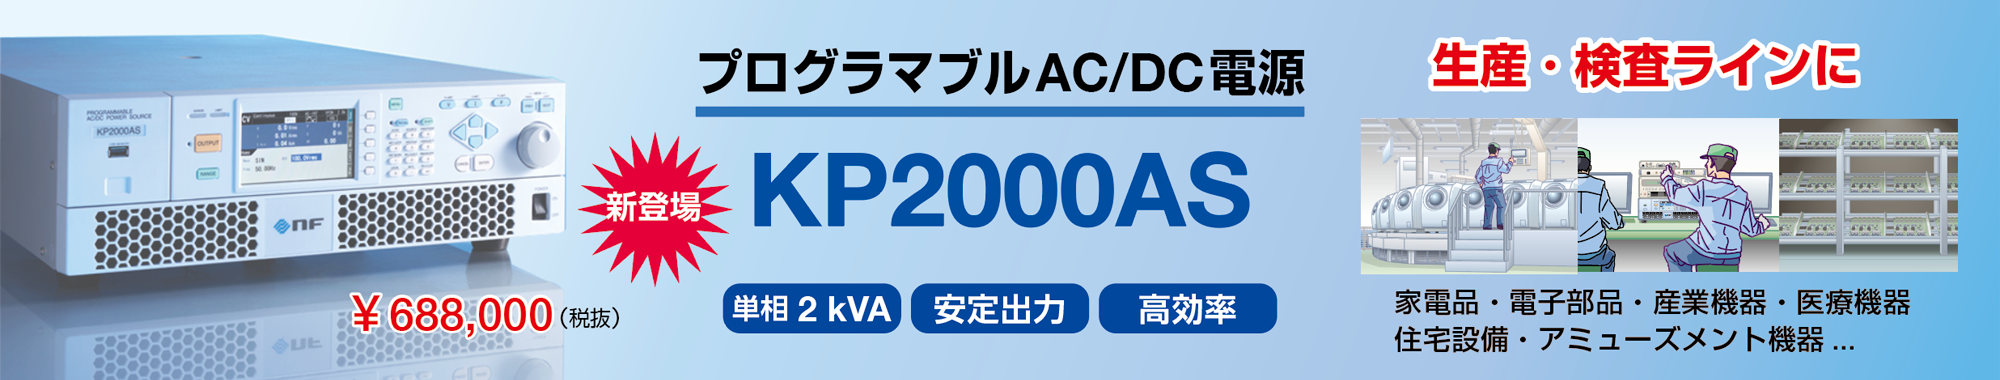 DKP2000AS